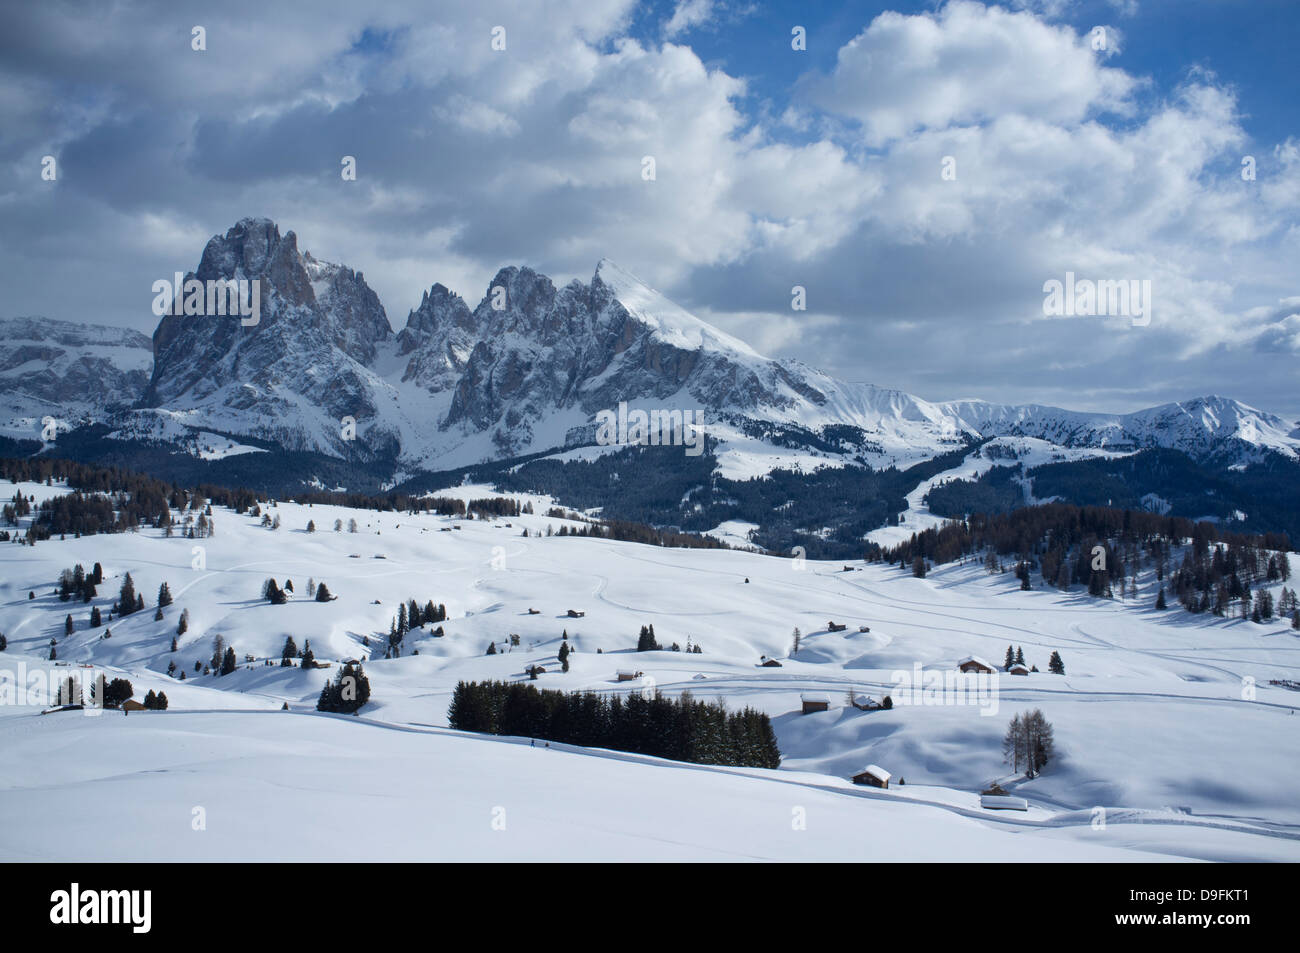 Une vue enneigée de Sassolungo et Sassopiato montagnes derrière l'Alpe di Siusi ski dans les Dolomites, le Tyrol du Sud, Italie Banque D'Images